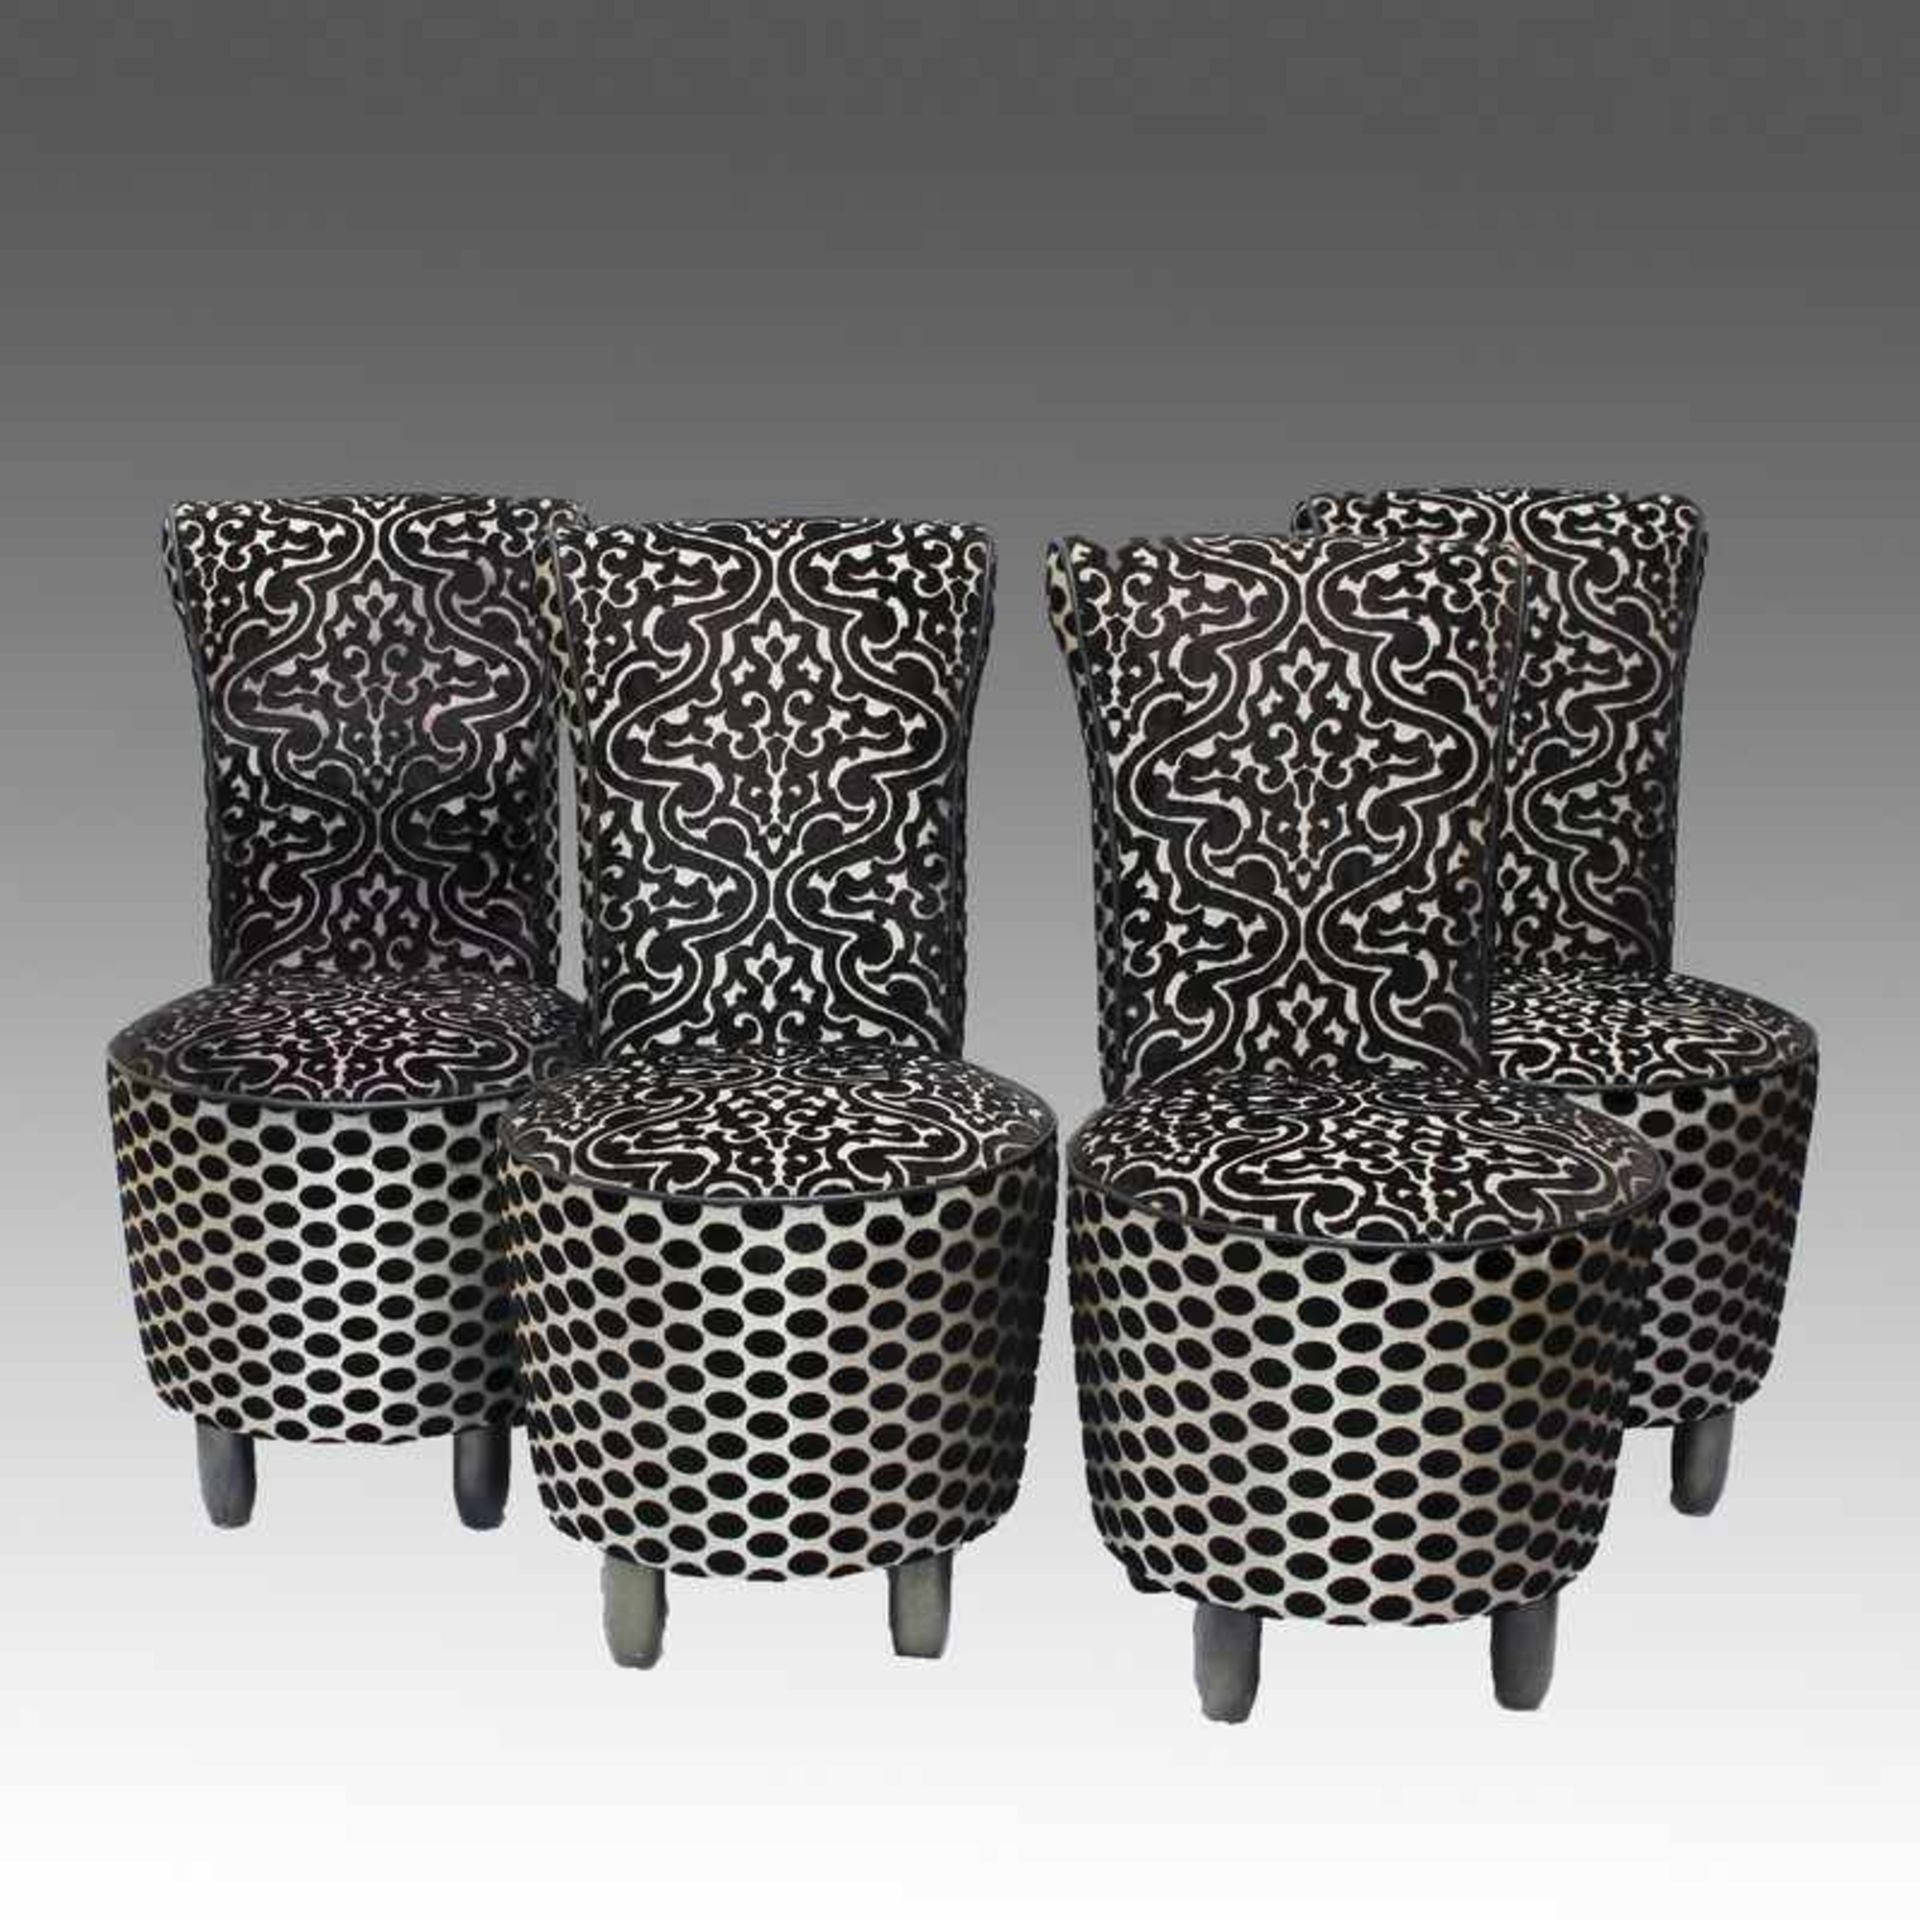 Satz Stühle 4 St., zylindrische Füße, schwarz irisierend, trommelförmiger Sitz, hohe Rückenlehne,